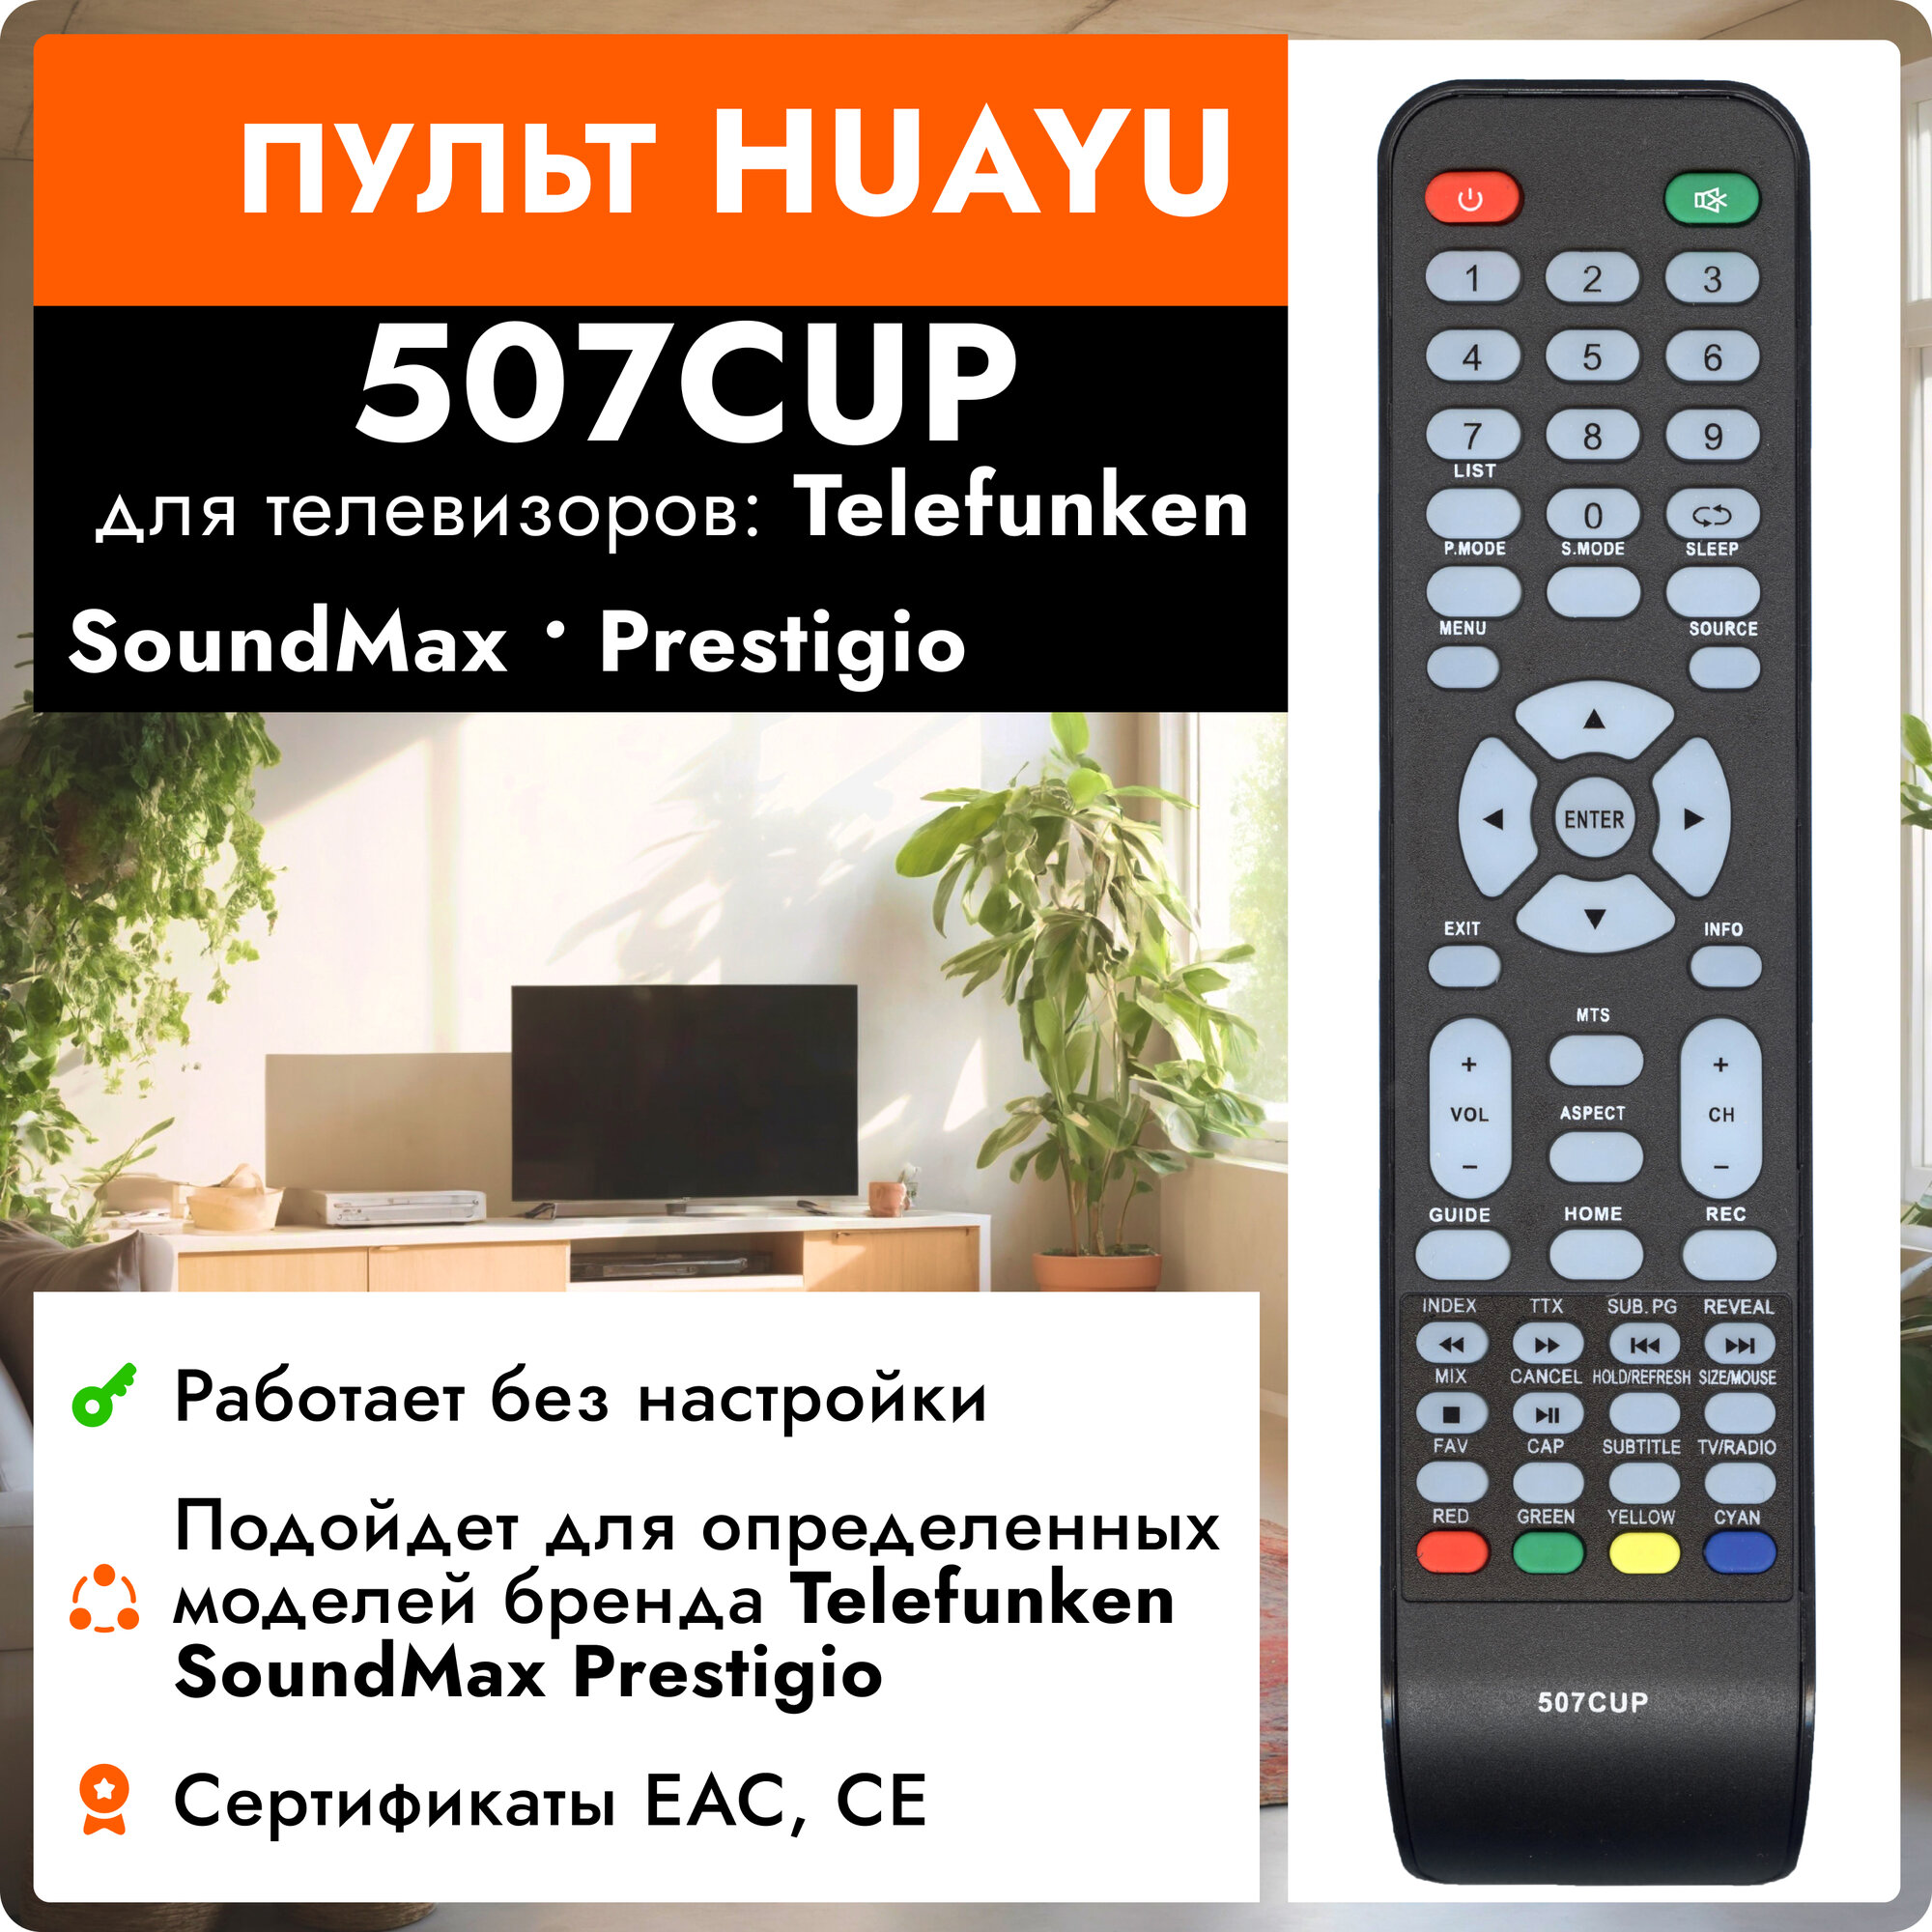 Пульт Huayu 507CUP для телевизора Telefunken, Soundmax, Prestigo !